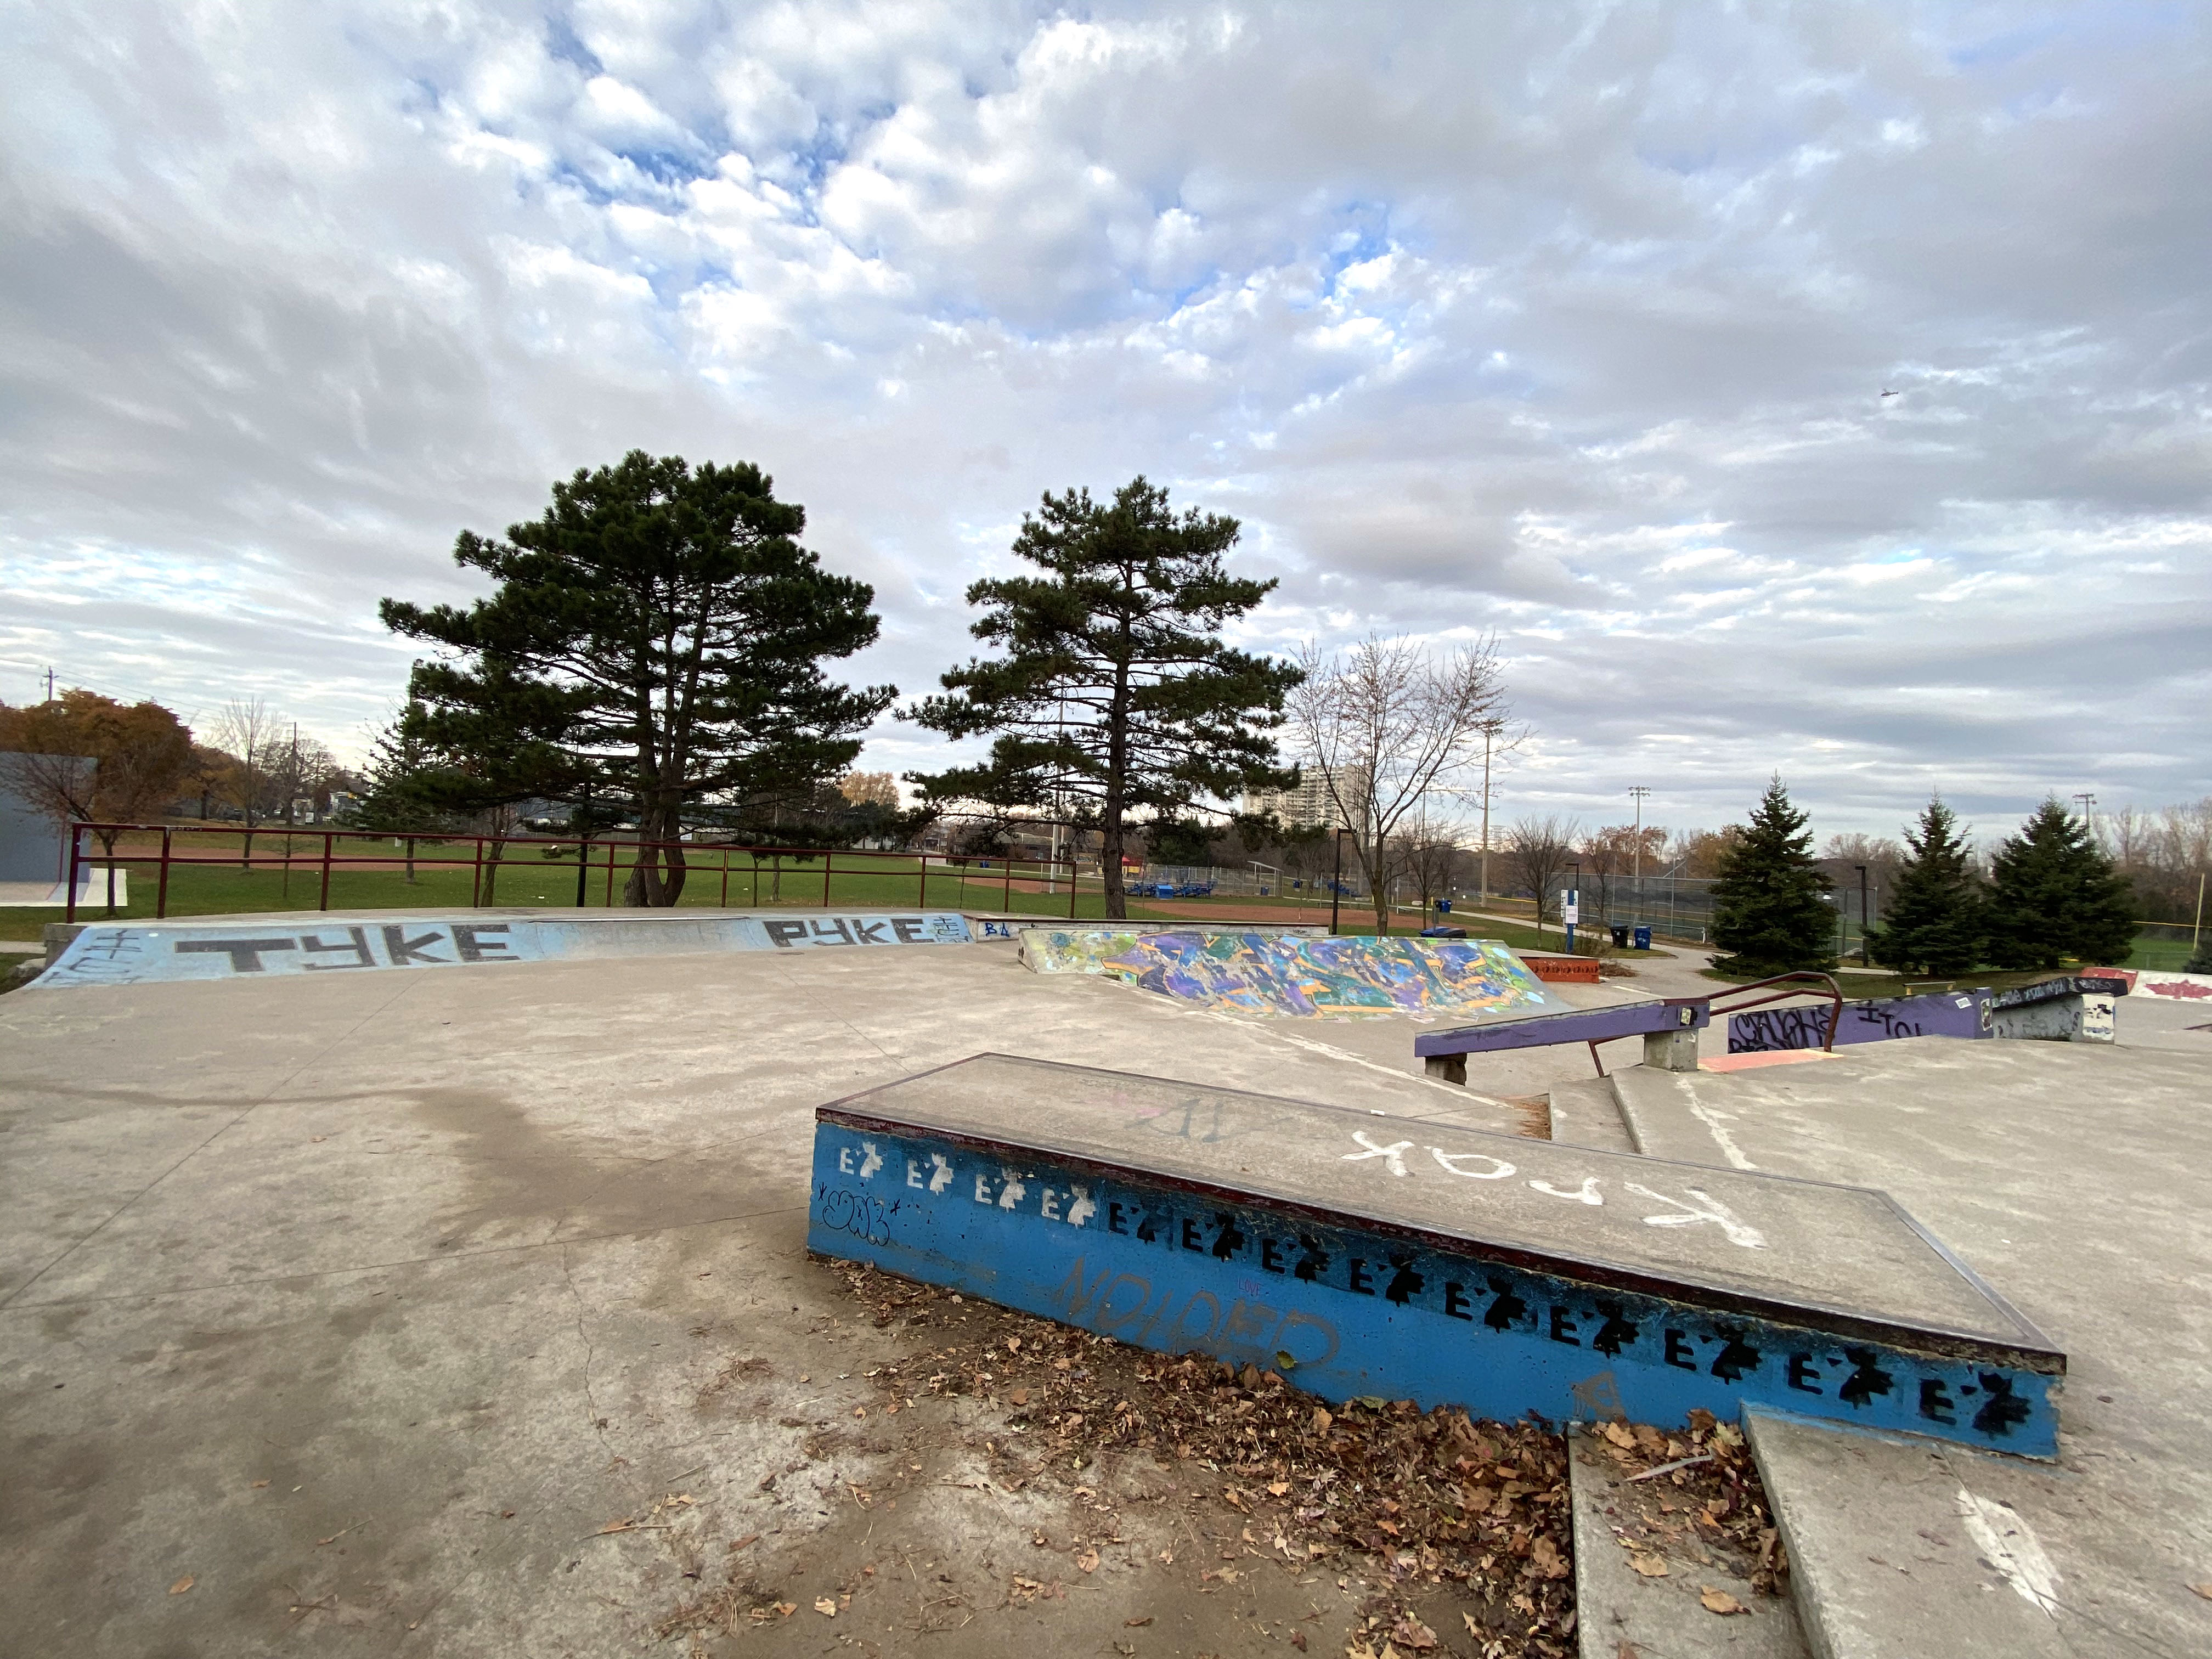 East York Skatepark in Toronto